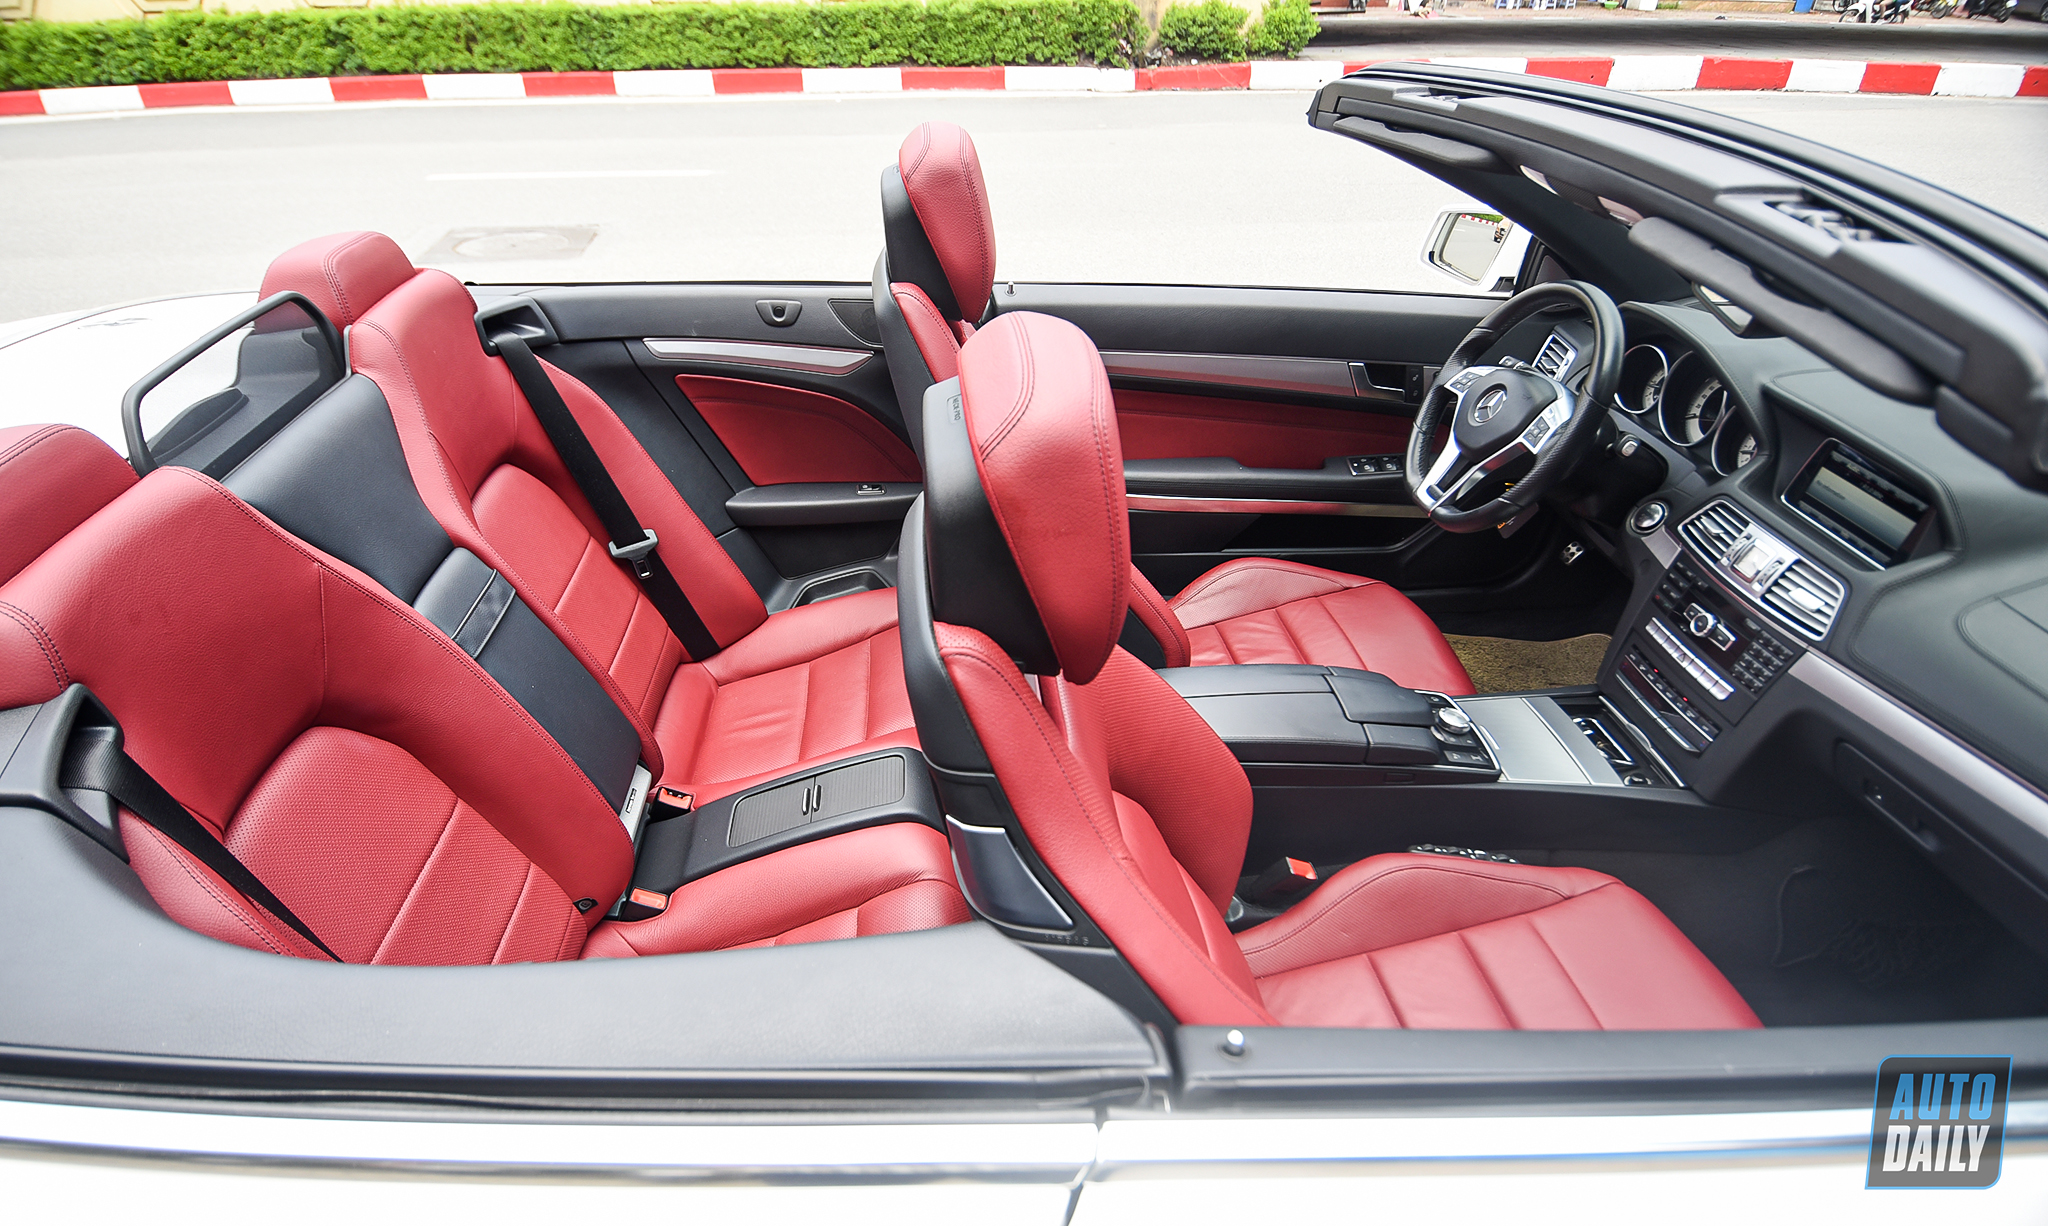 Mui trần hàng hiếm Mercedes-Benz E400 Cabriolet lên sàn xe cũ giá hơn 2 tỷ adt-4972-copy.jpg